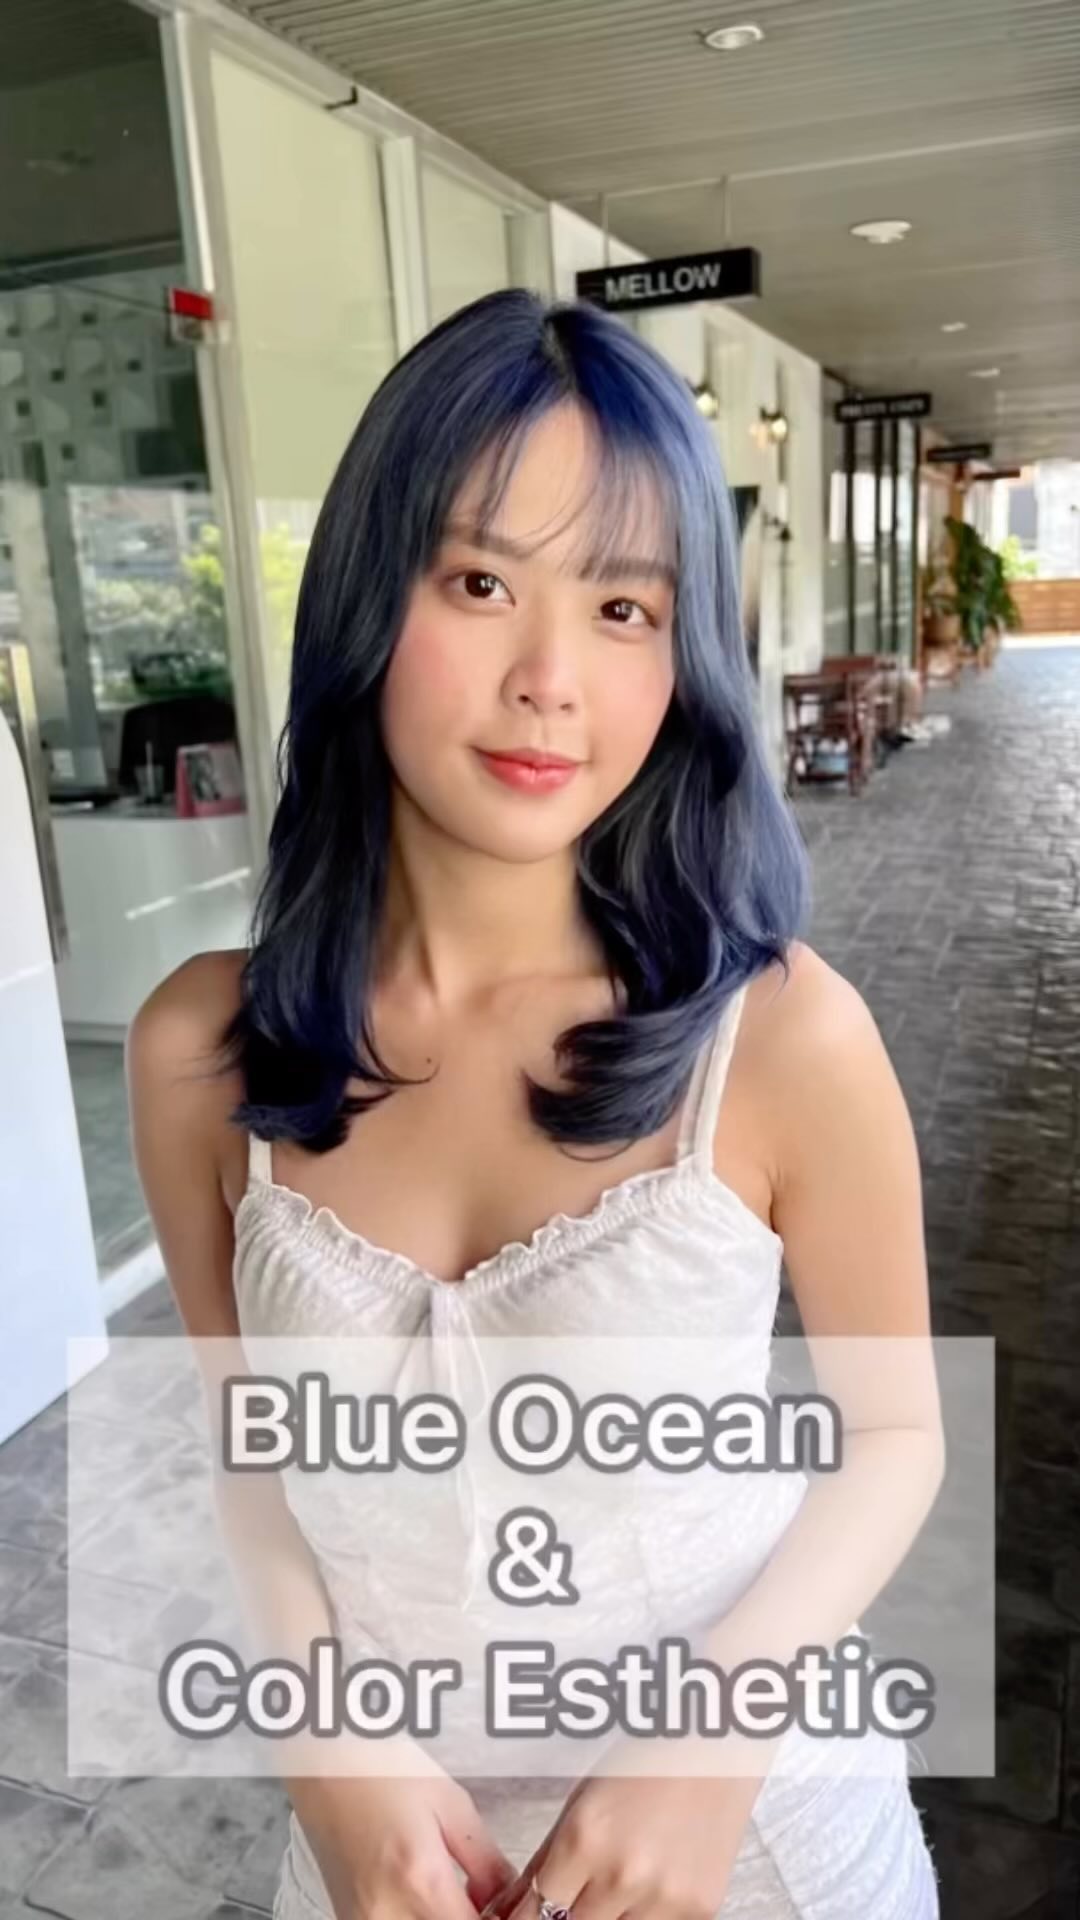 สวัสดีค่ะ 
วันนี้ Cuu's hairขอนำเสนอสี Blue Ocean+Color Esthetic 
สีน้ำเงินหม่น สไตล์ไอดอลเกาหลี ขับผิวผ่อง ผู้หญิงทำก็สวย ผู้ชายทำก็เท่ ไม่เหมือนใคร  สำหรับคนที่อยากเปลี่ยนลุค ชอบผมโทนหม่นๆแนะนำสีนี้เลยนะคะ
สีนี้ต้องฟอกขั้นต่ำ2รอบนะคะ  Color Esthetic
7300 บาท → 5600 baht
เป็นเมนูทำสีผมพร้อมกับเติมสารอาหารเป็นจำนวนมากแก่เส้นผม ที่อุดมไปด้วยคุณประโยชน์มากมายเช่น กรดอะมิโน กรดไฮยาลูโรนิก เซราไมด์ เคราติน คอลลาเจน วิตามินฯลฯ ผมจึงเงางาม นุ่มสลวย ดูสุขภาพดีขึ้นจากเดิม ️  #bangkok #thonglor #bangkokhairsalon #ผม #เกาหลี #ม้วนผมเกาหลี #ร้านเสริมสวย #ดัดผม #สไตล์เกาหลี #hairesthetic #organic #バンコク美容室